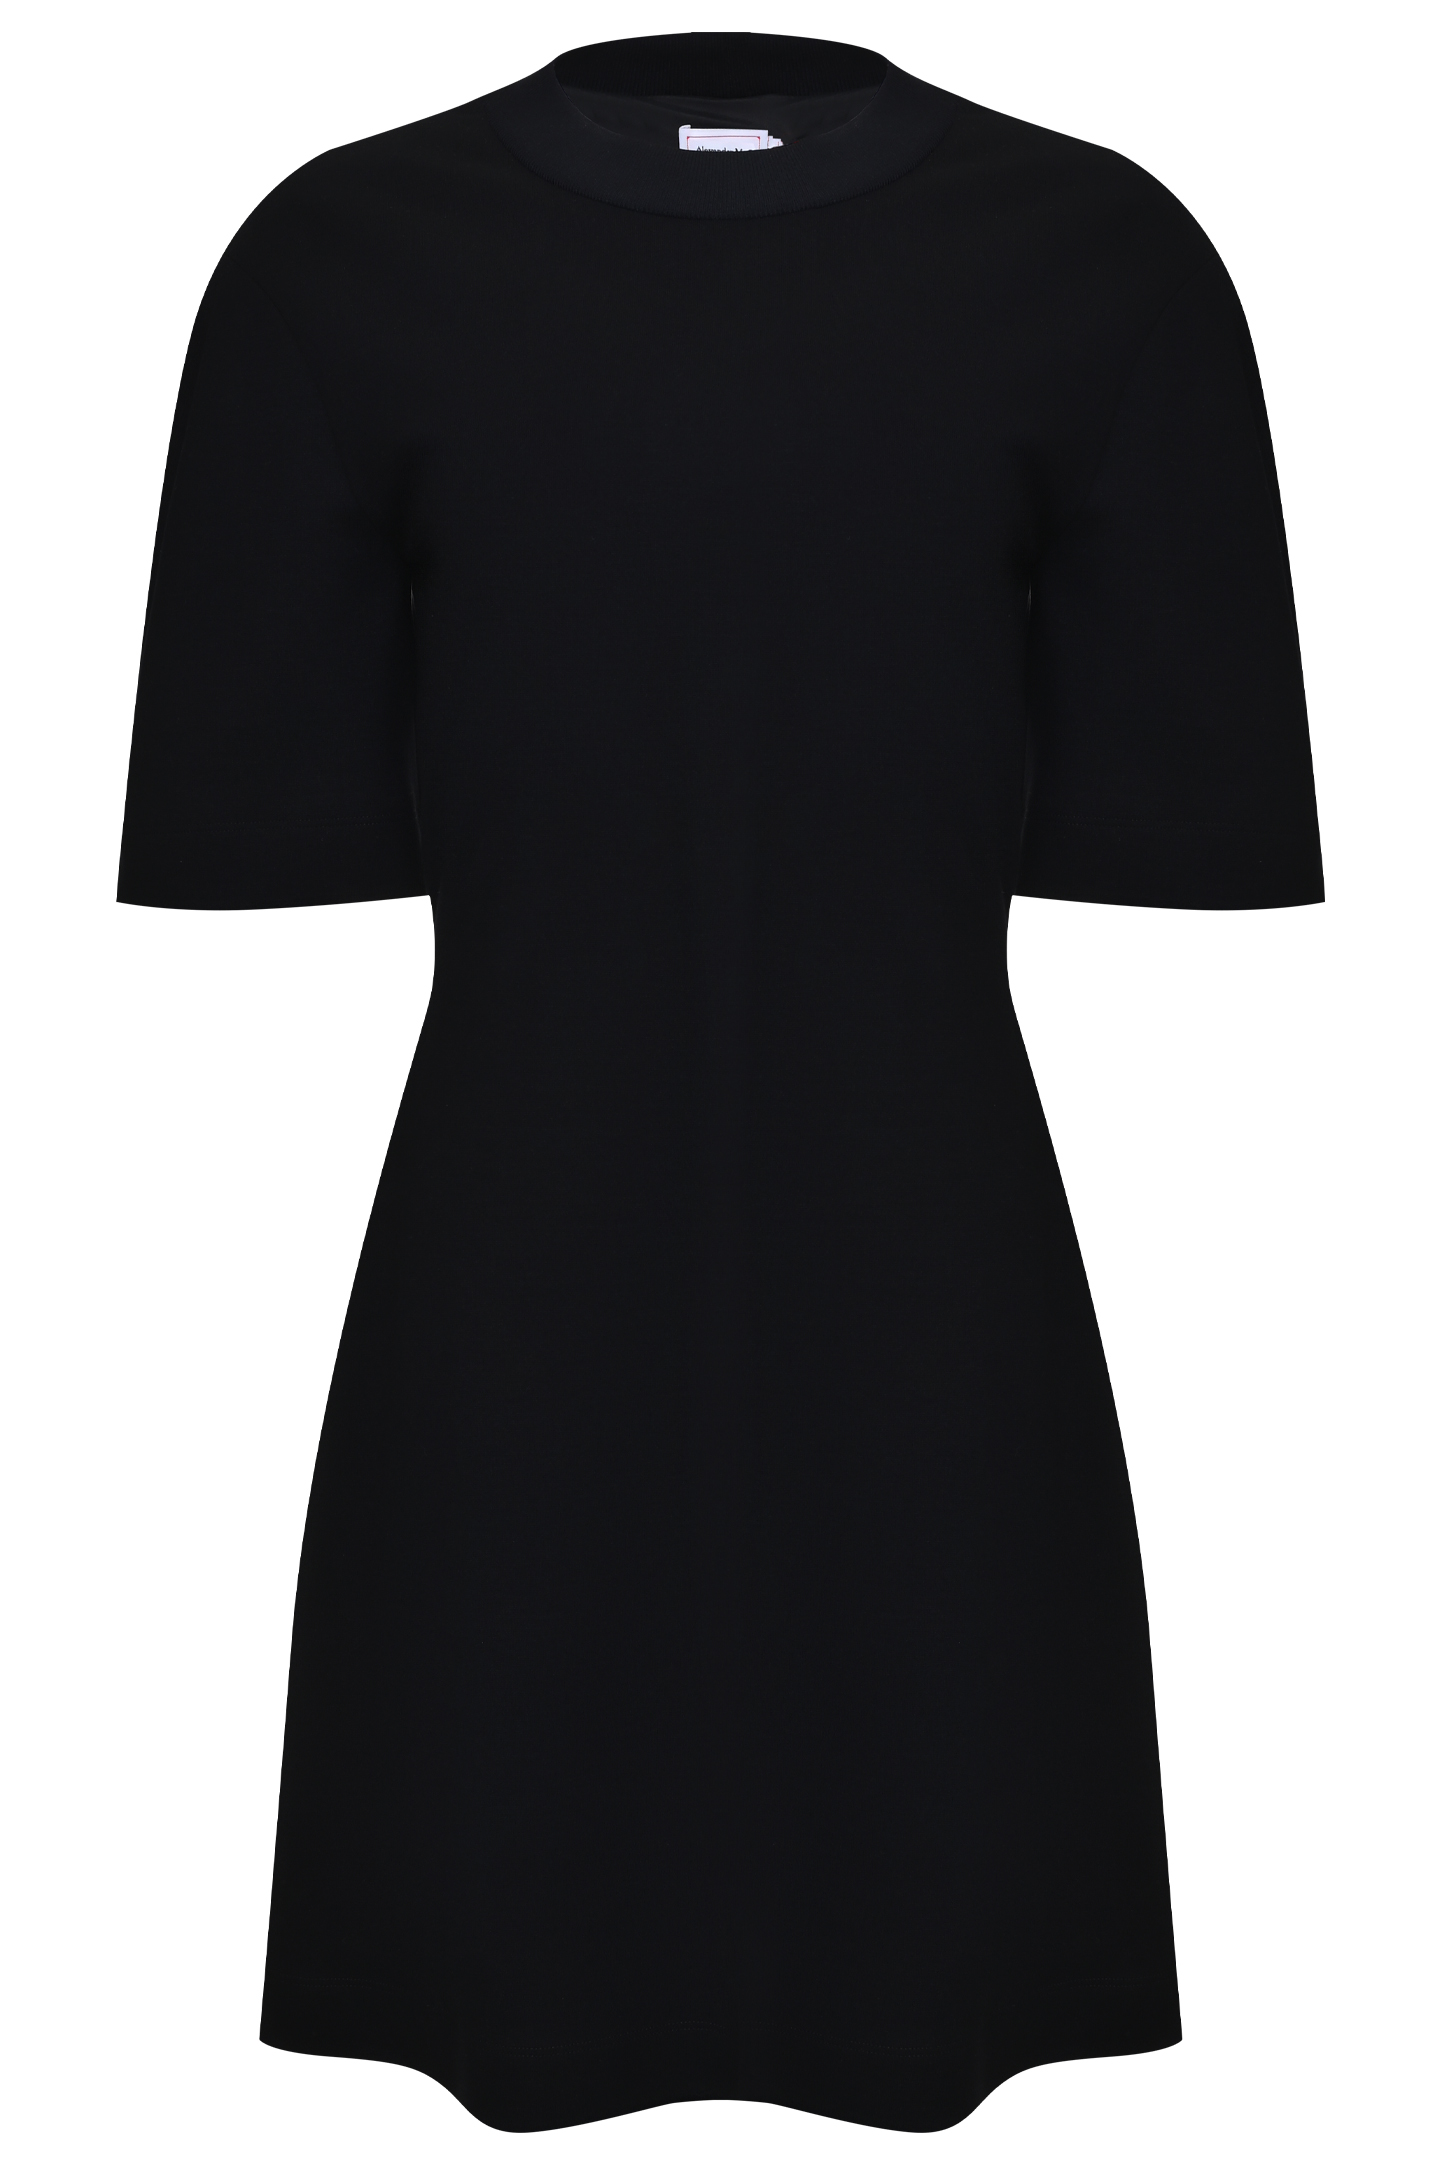 Платье ALEXANDER MCQUEEN 663090 QLABD, цвет: Черный, Женский